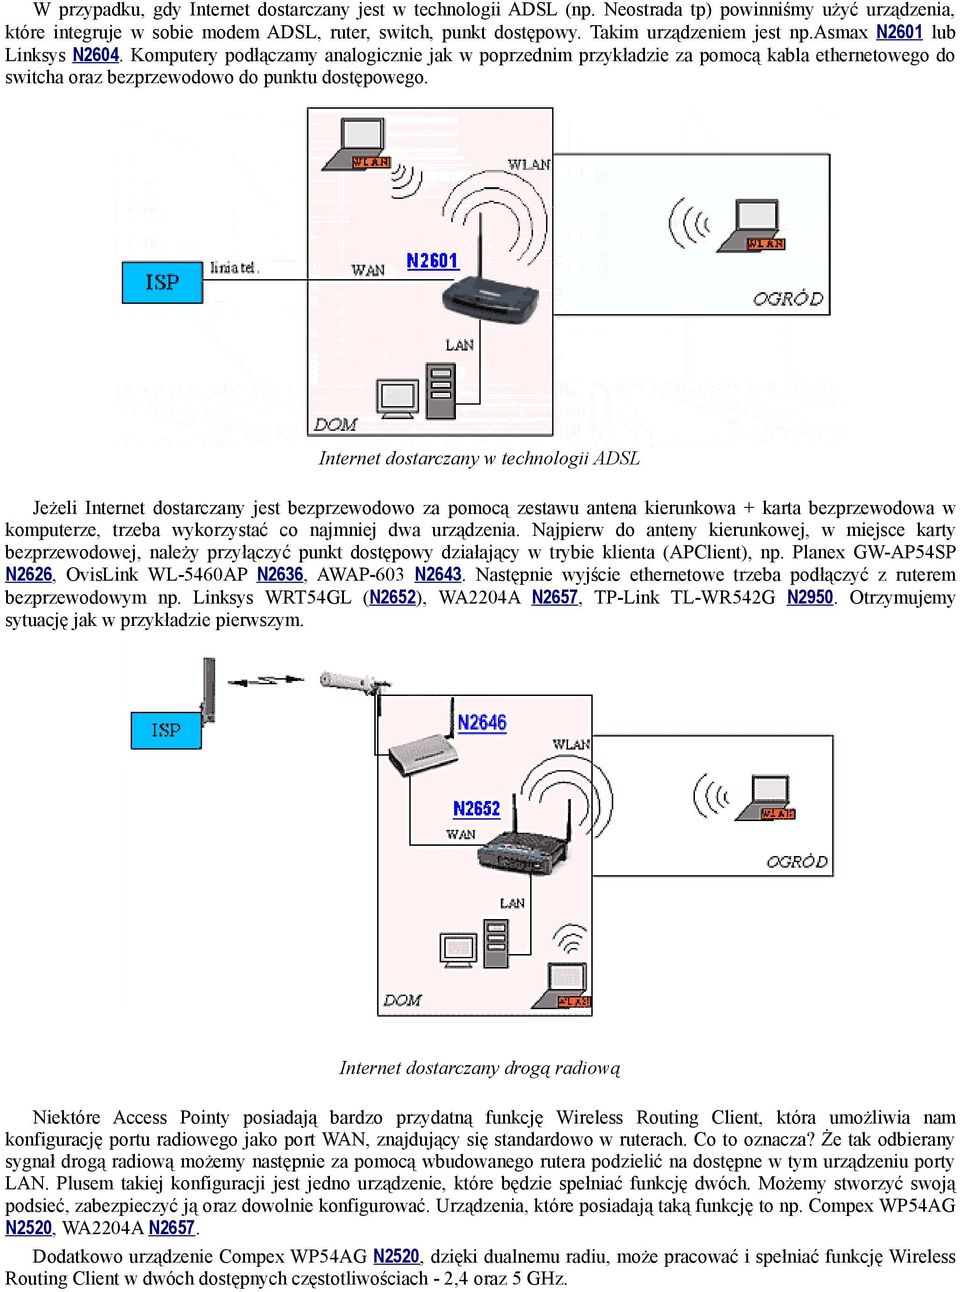 Komputery podłączamy analogicznie jak w poprzednim przykładzie za pomocą kabla ethernetowego do switcha oraz bezprzewodowo do punktu dostępowego.